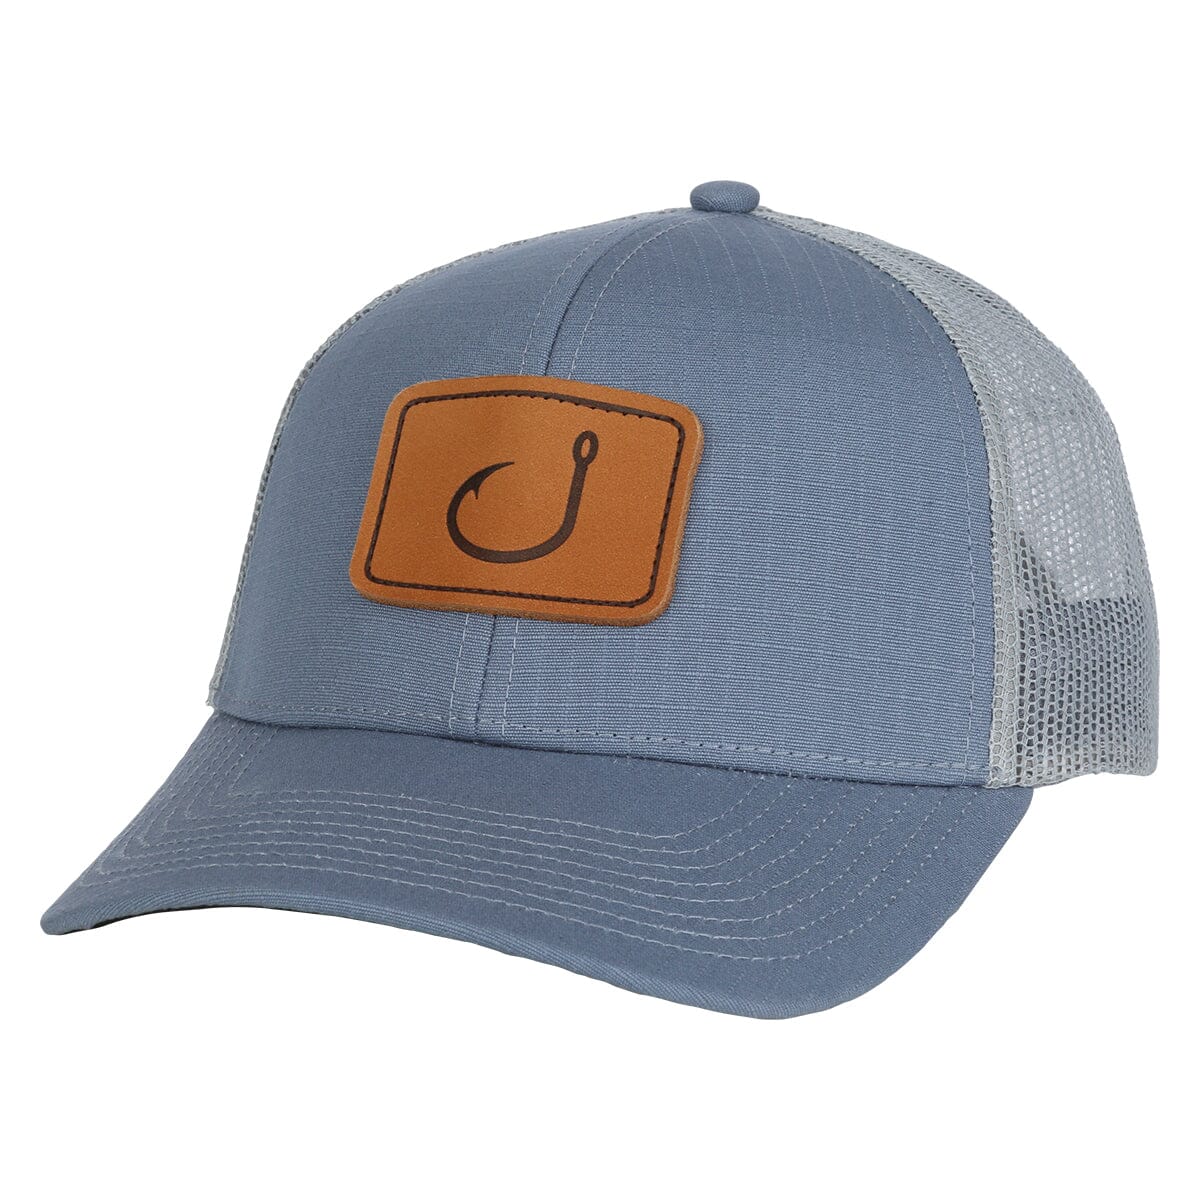 AVID - Women's Trucker Hat